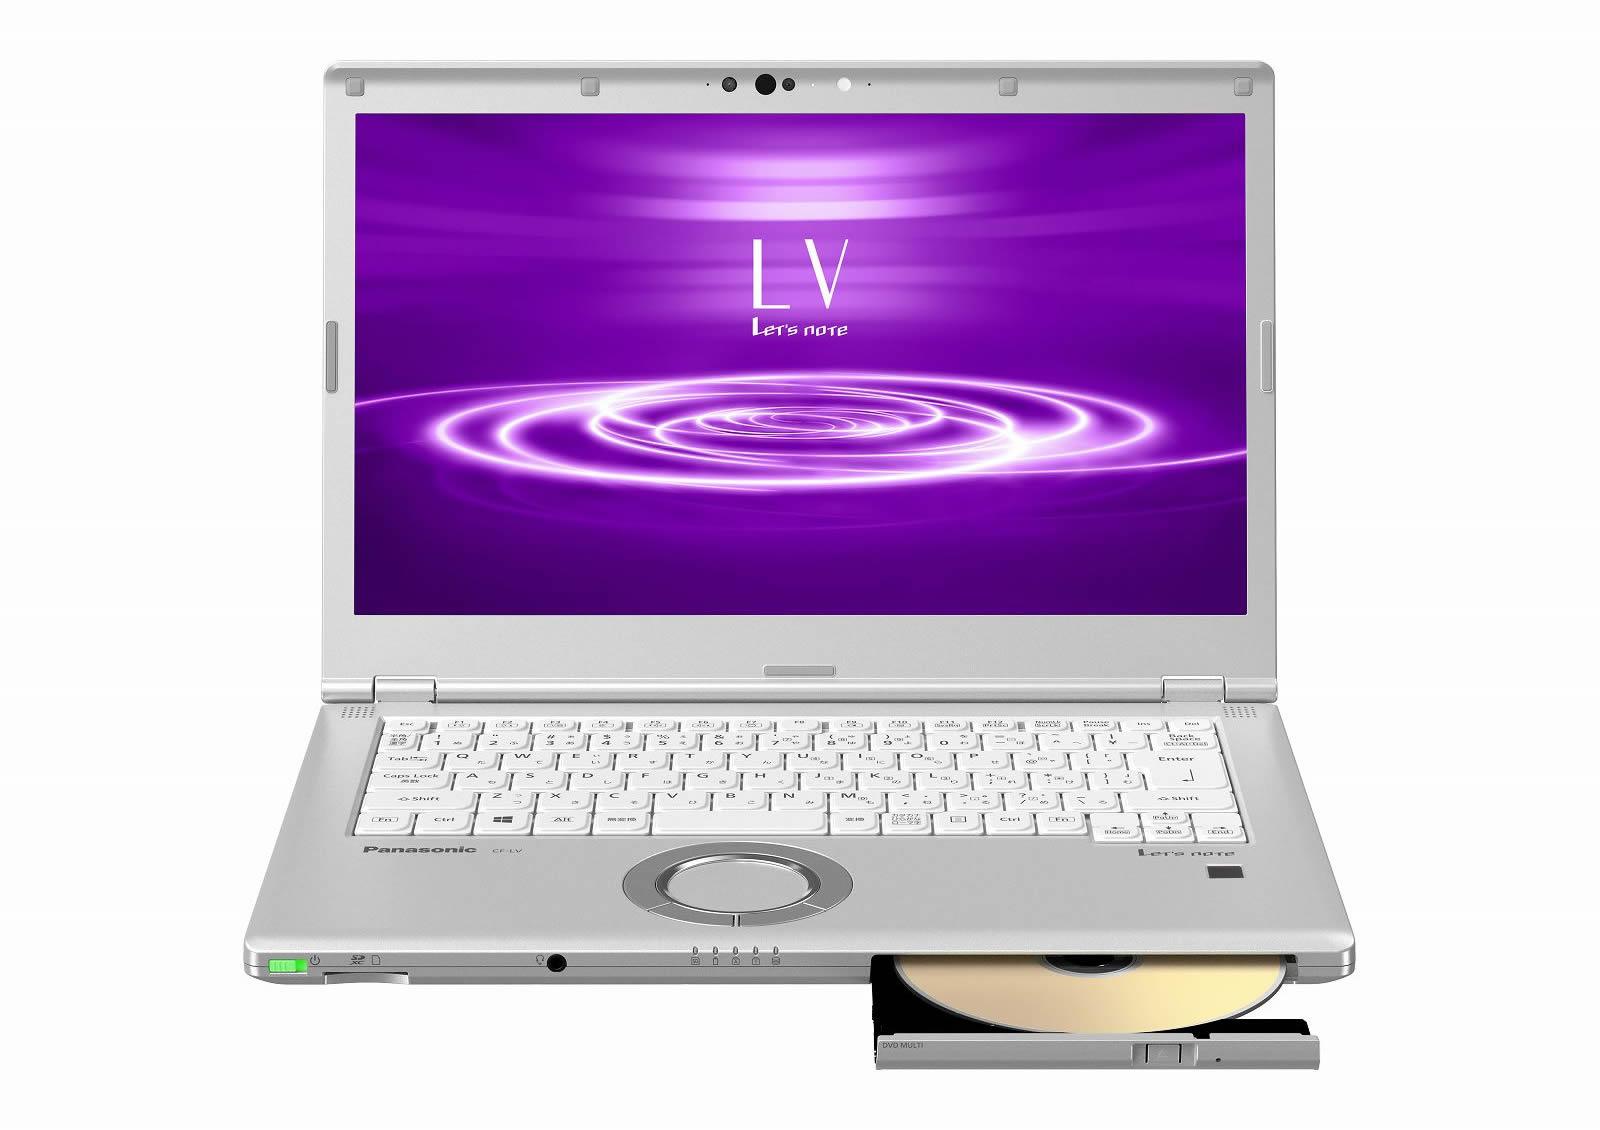 モバイルパソコン「Let's note」個人店頭向け 春モデル LV8 シルバースーパーマルチ